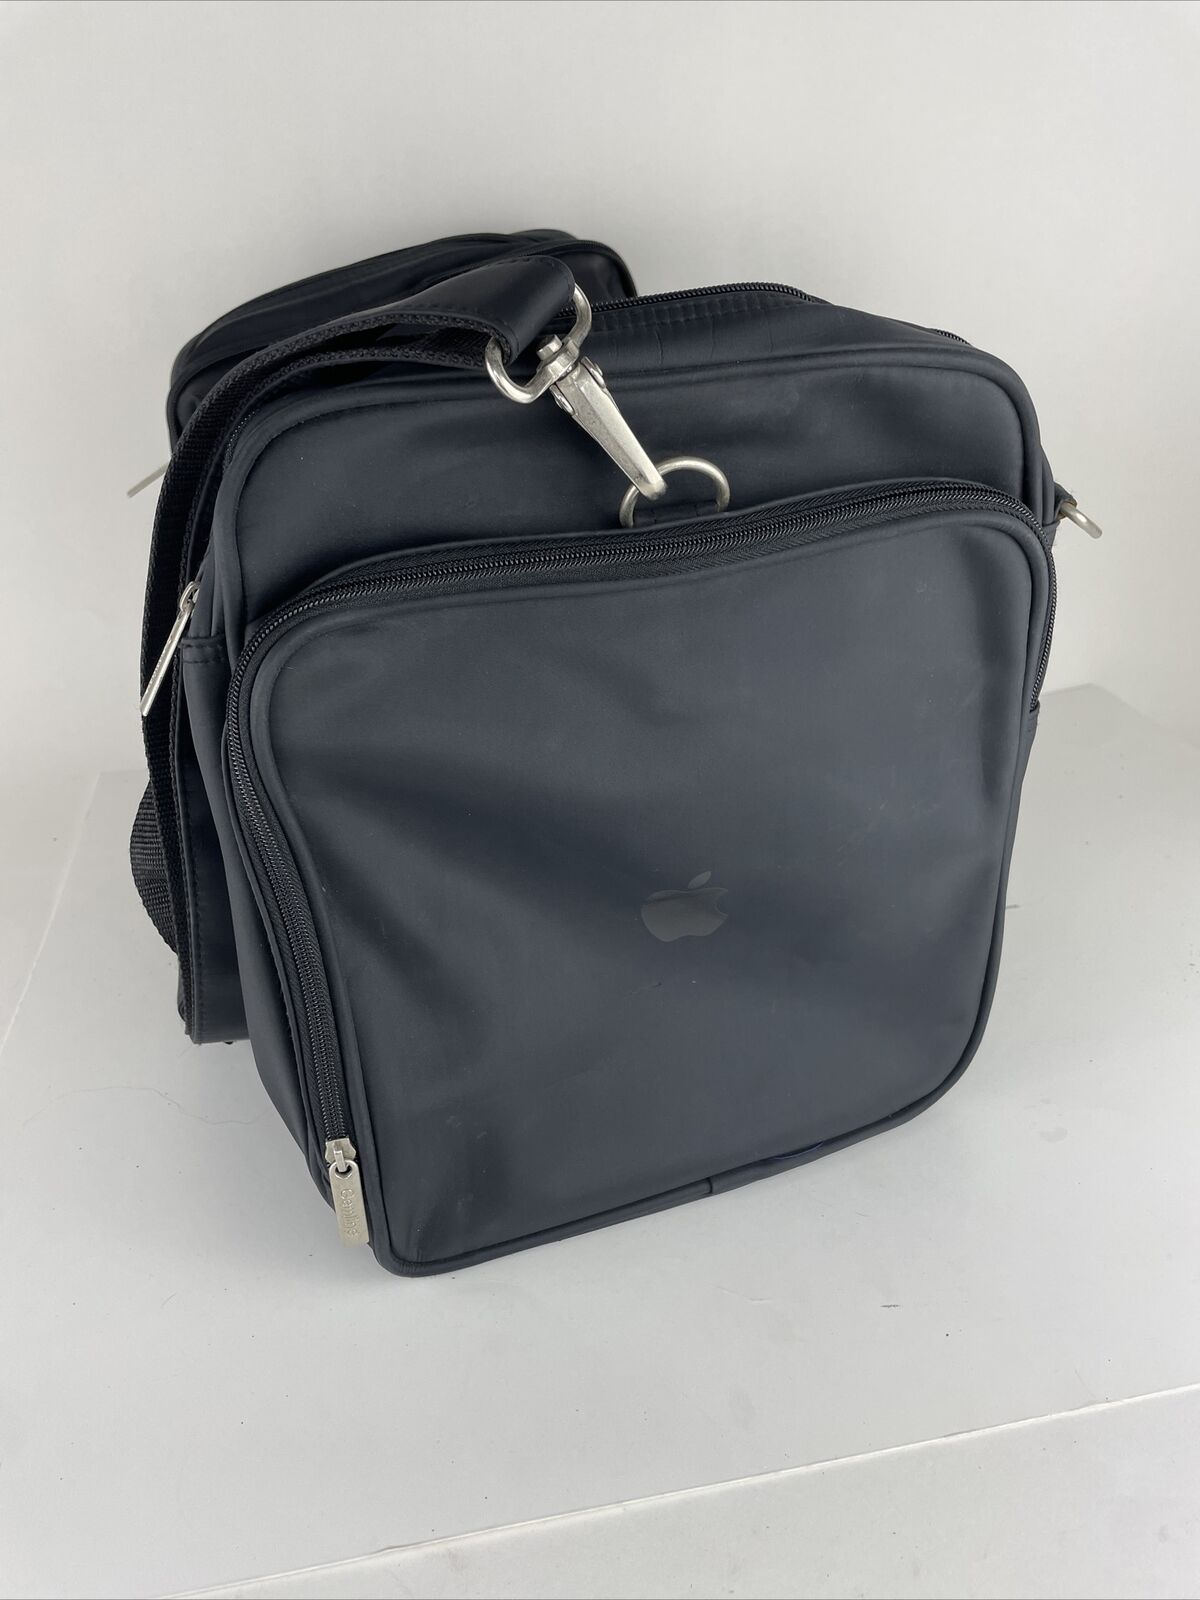 Gemline Apple Branded Duffel Bag HARD TO FIND Gym Bag